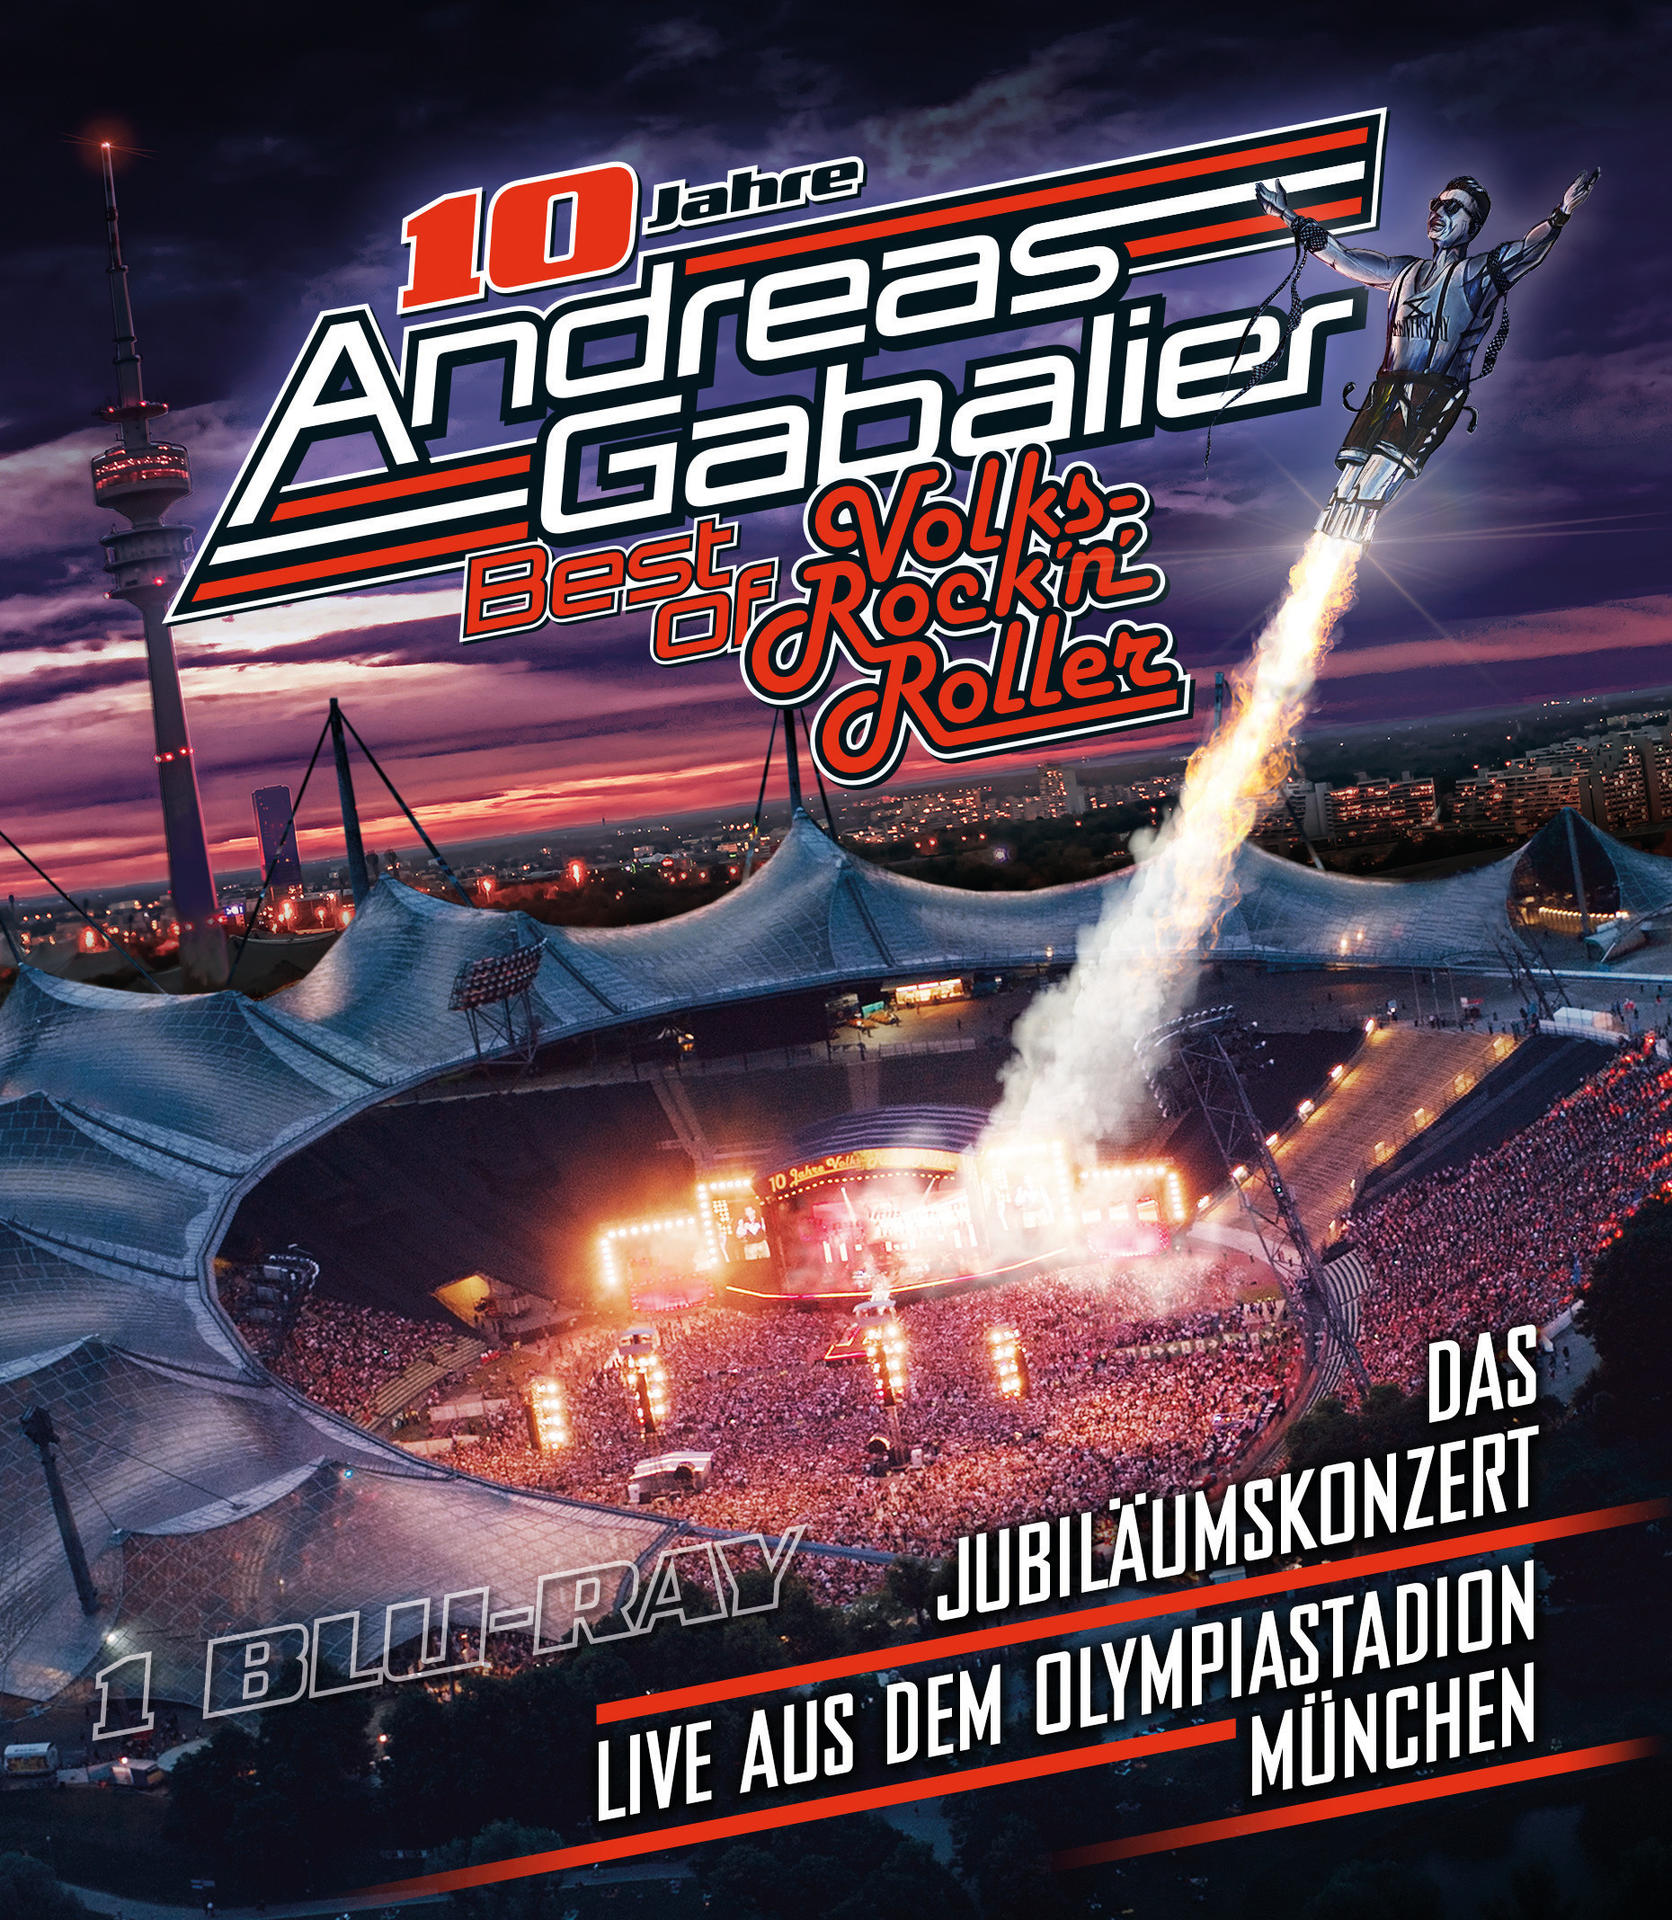 dem Olympiastadion Best Andreas Volks-Rock’n’Roller in - - aus Jubiläumskonzert of Das live Gabalier München – (Blu-ray)